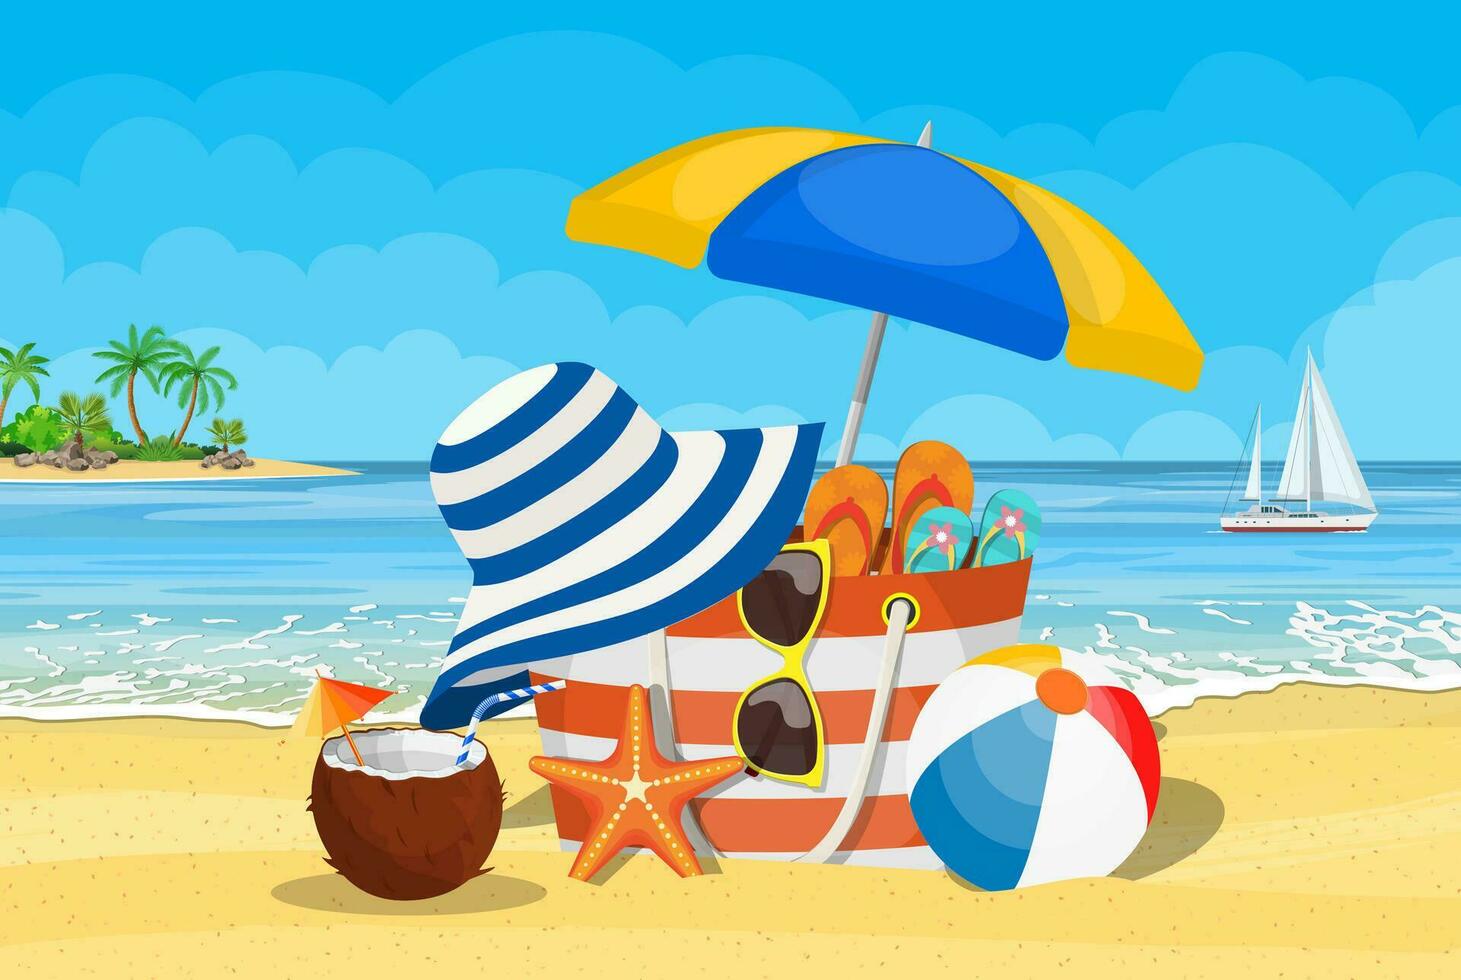 zomer accessoires voor de strand. tas, zonnebril, omdraaien flops, zeester, bal, paraplu . tegen de achtergrond van de zon de zee en palm bomen. vector illustratie in vlak stijl